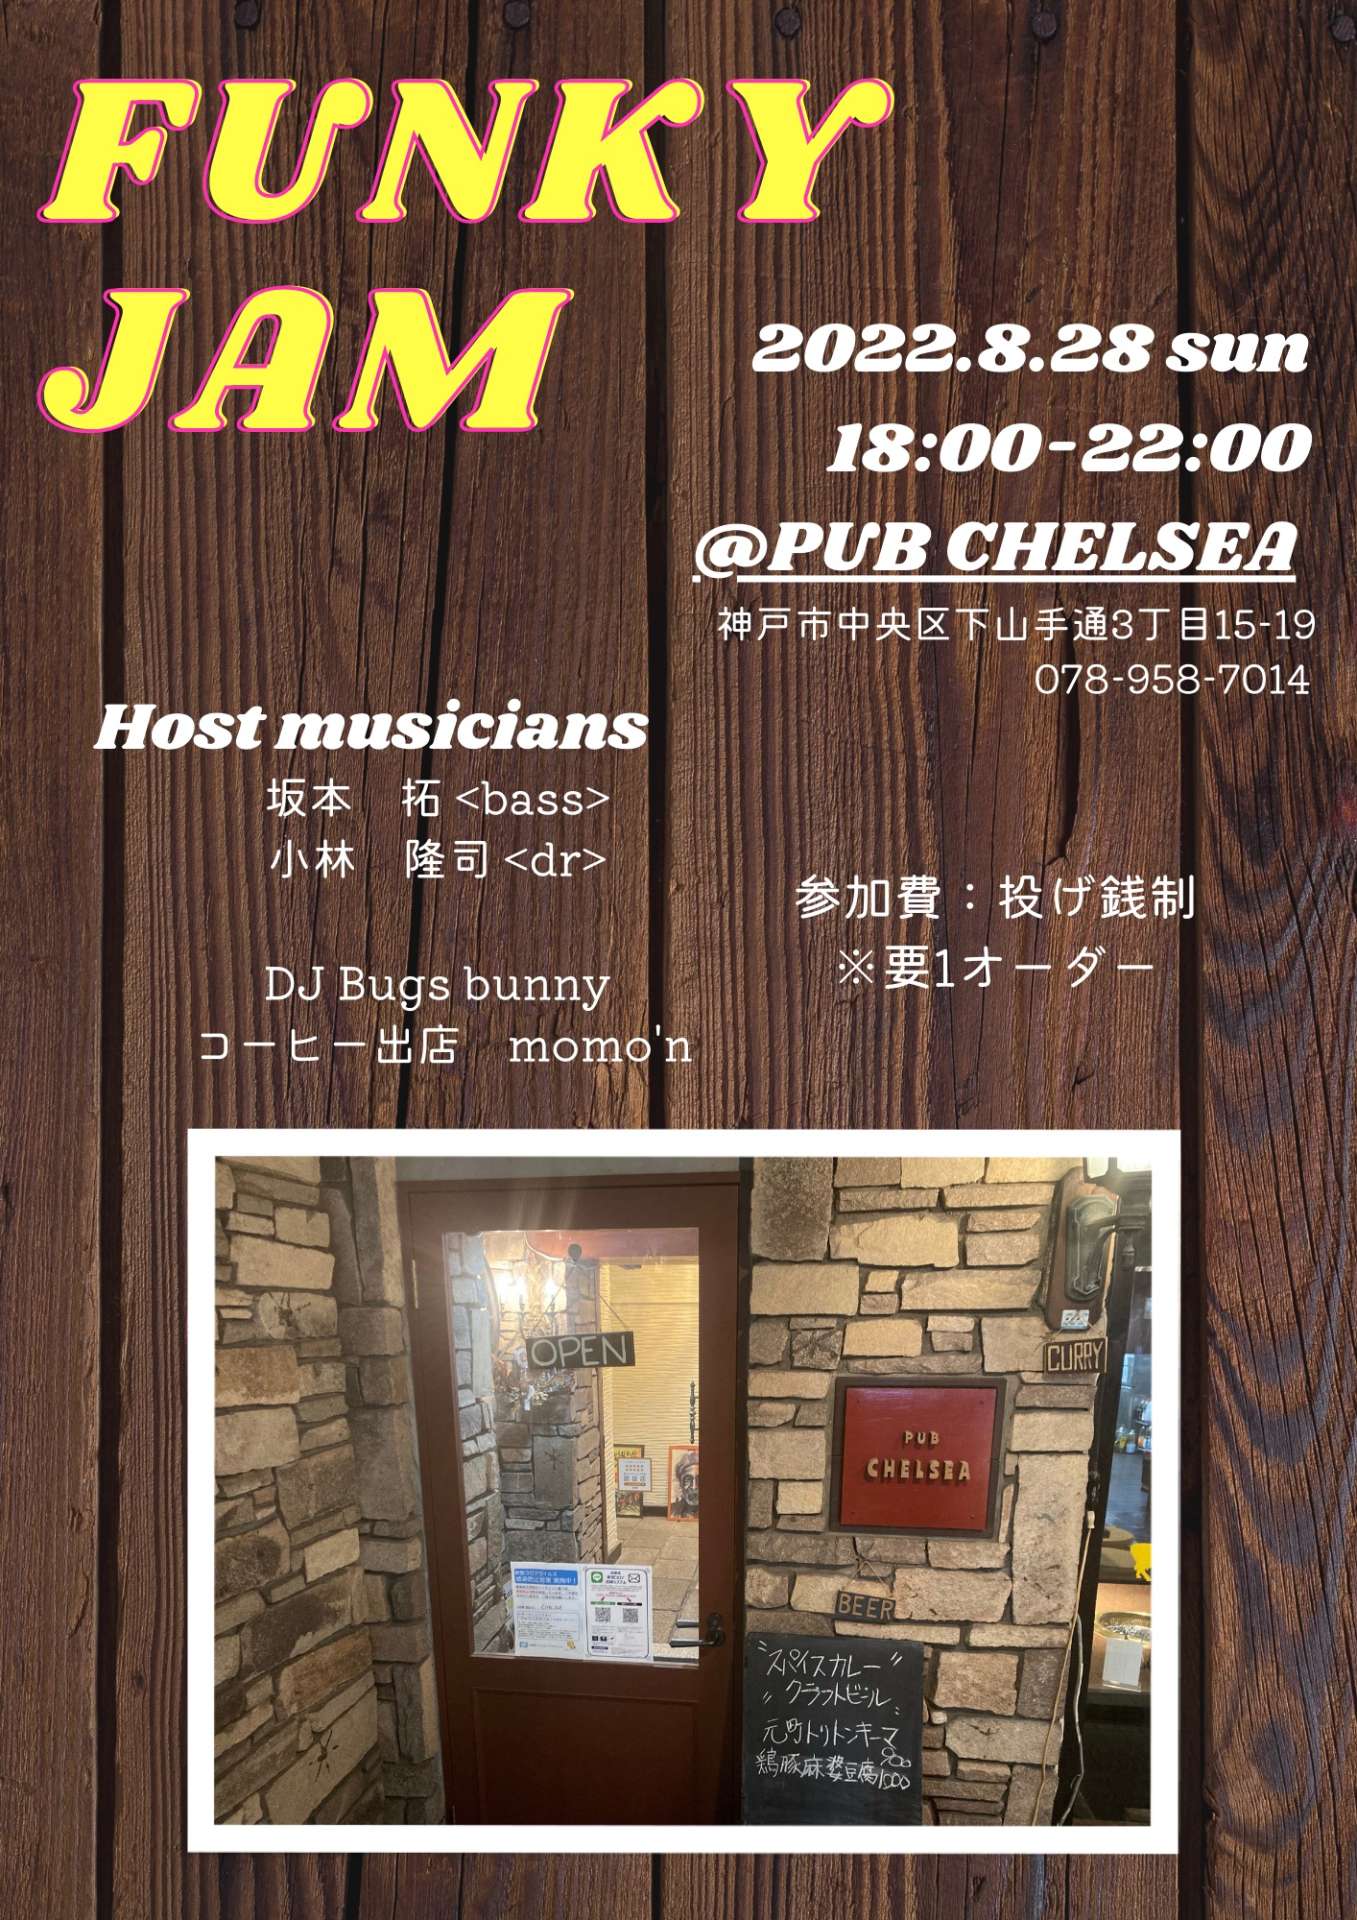 毎月最終日曜日開催「Funky Jam」初心者大歓迎のジャムセッション。神戸元町Pub Chelseaにて。